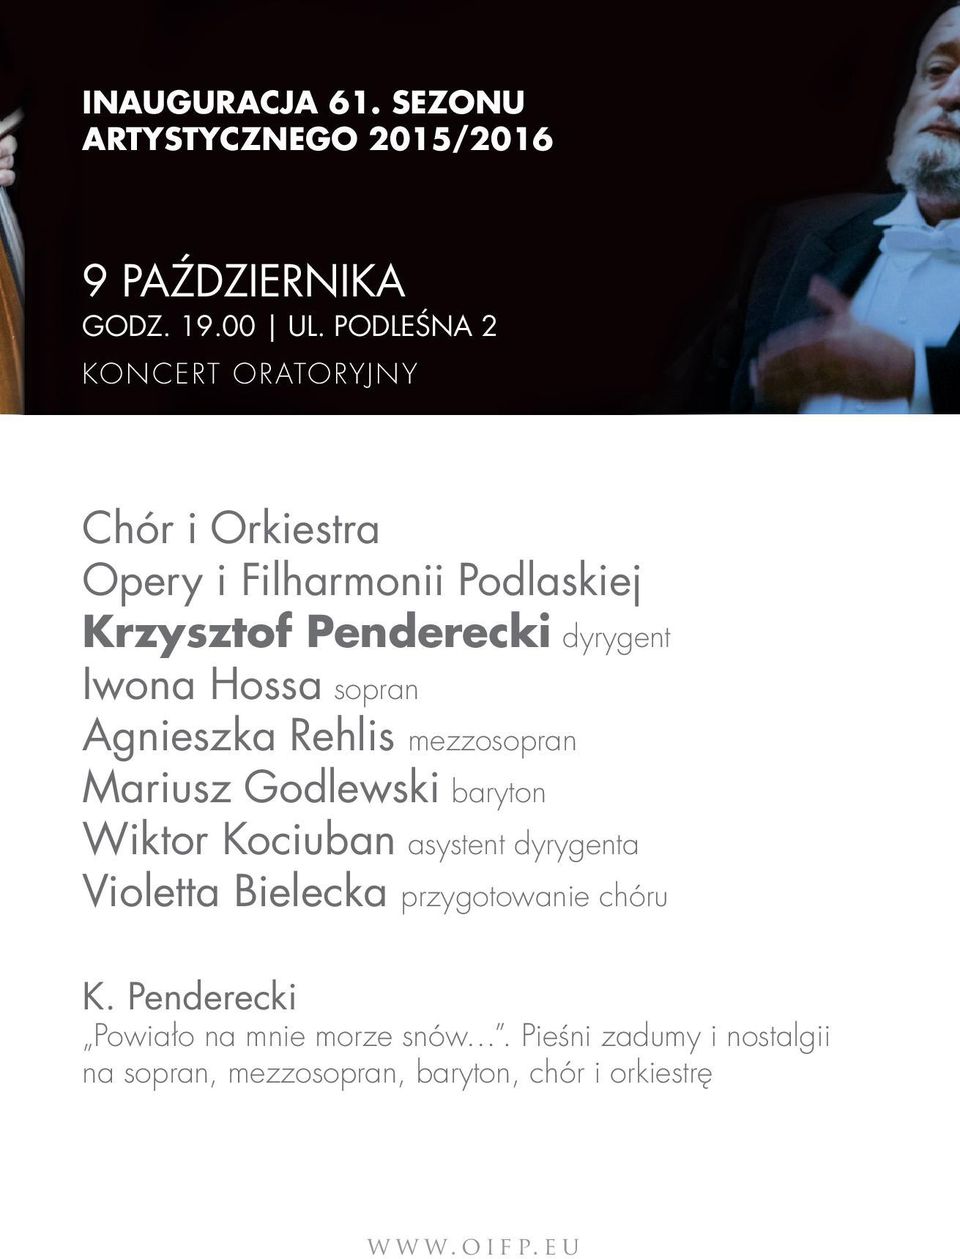 Iwona Hossa sopran Agnieszka Rehlis mezzosopran Mariusz Godlewski baryton Wiktor Kociuban asystent dyrygenta